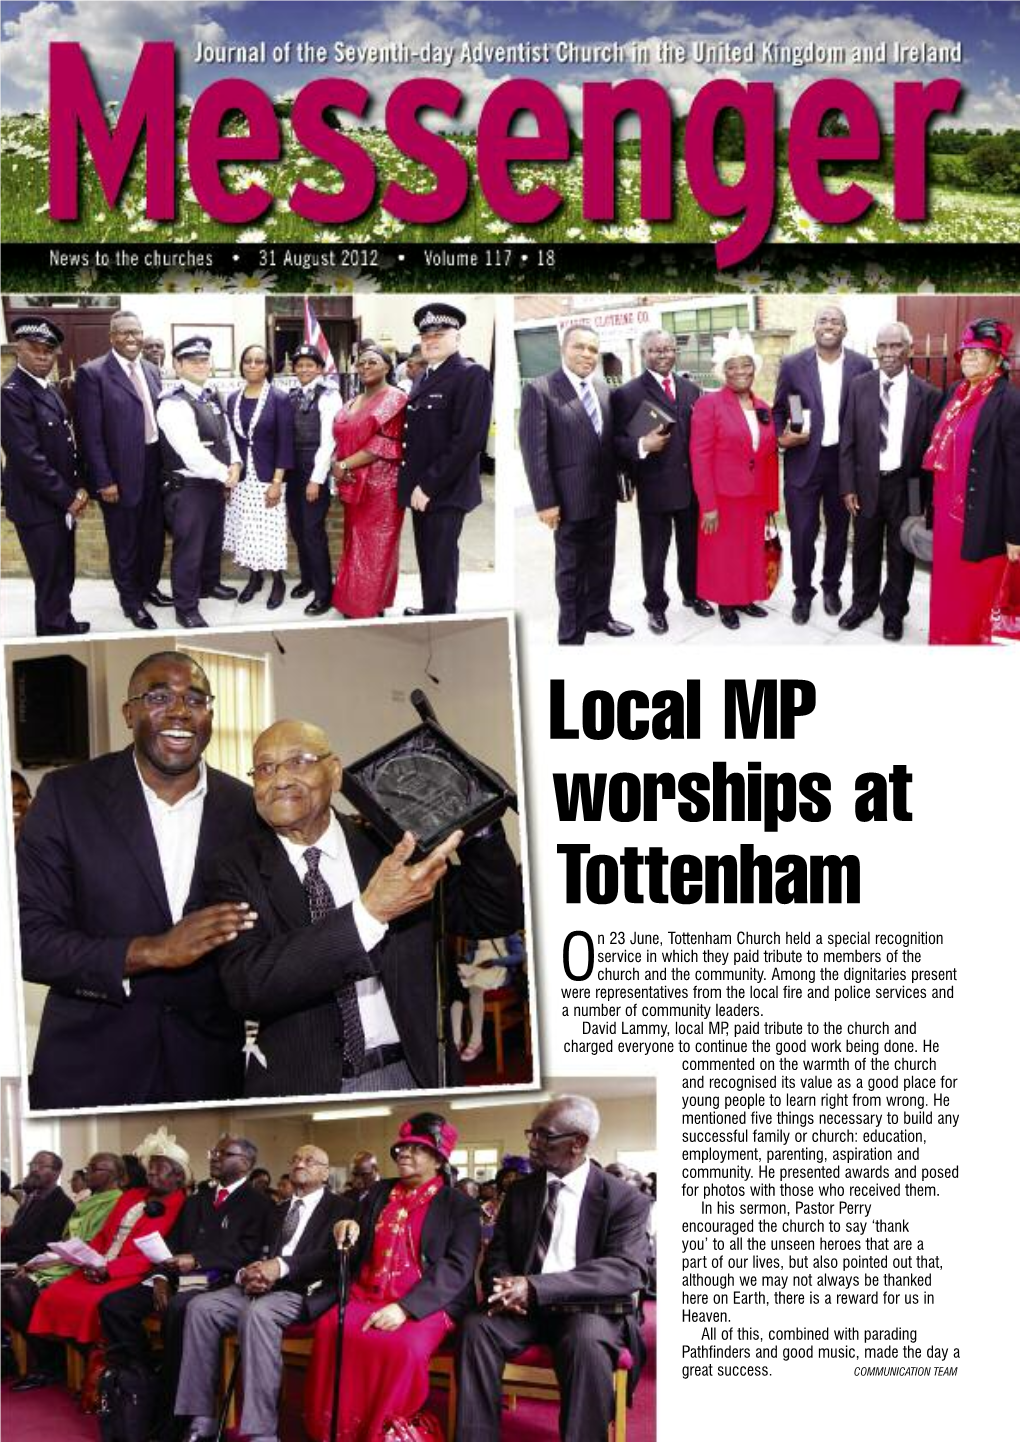 Local MP Worships at Tottenham